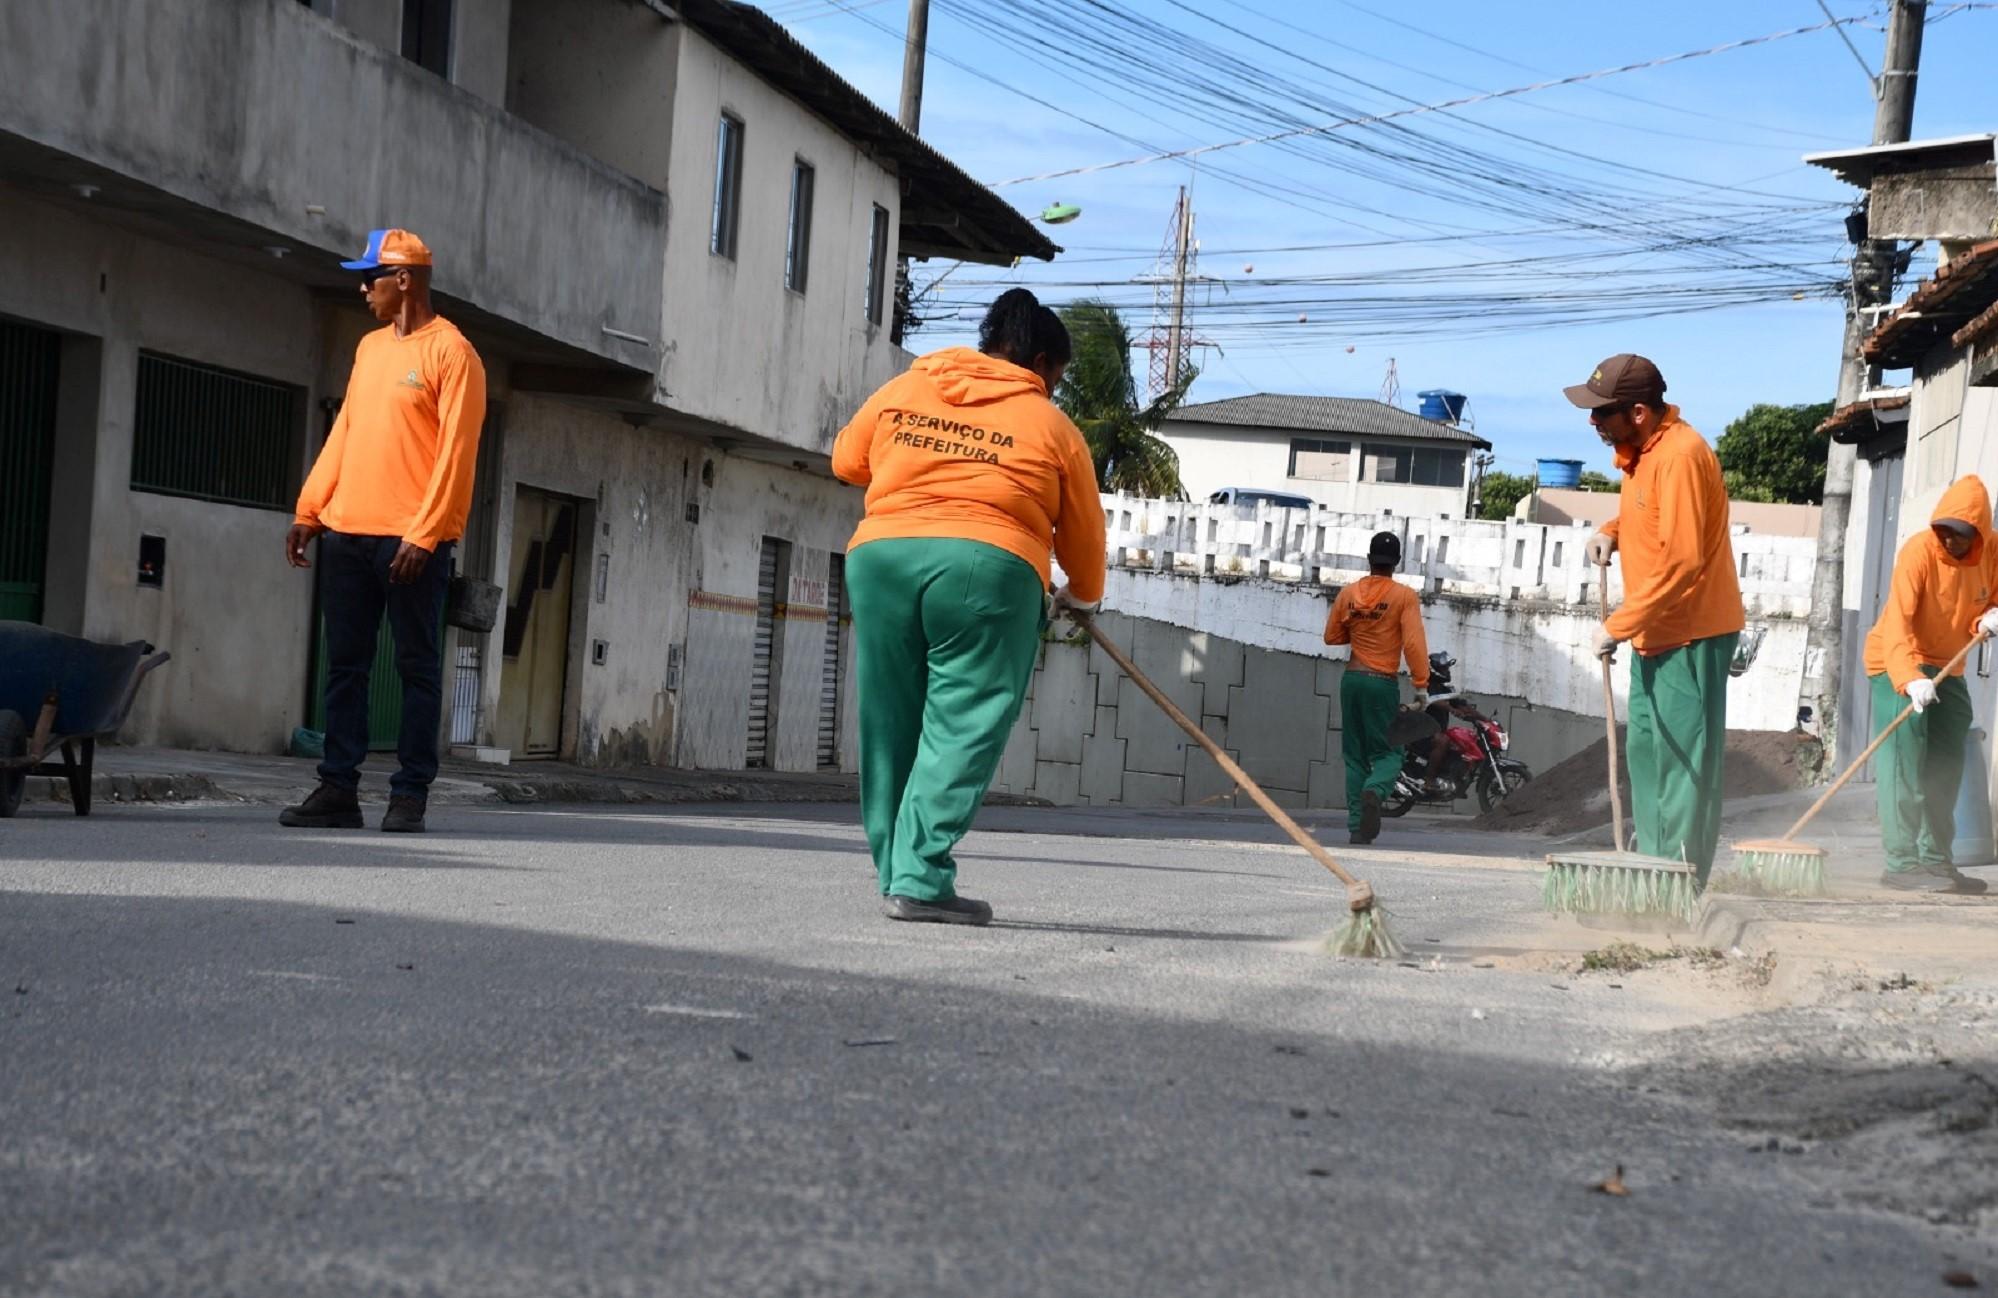 Sistema de mutirão: Equipes integradas para otimizar resultados na limpeza e manutenção urbana, em São Mateus no ES